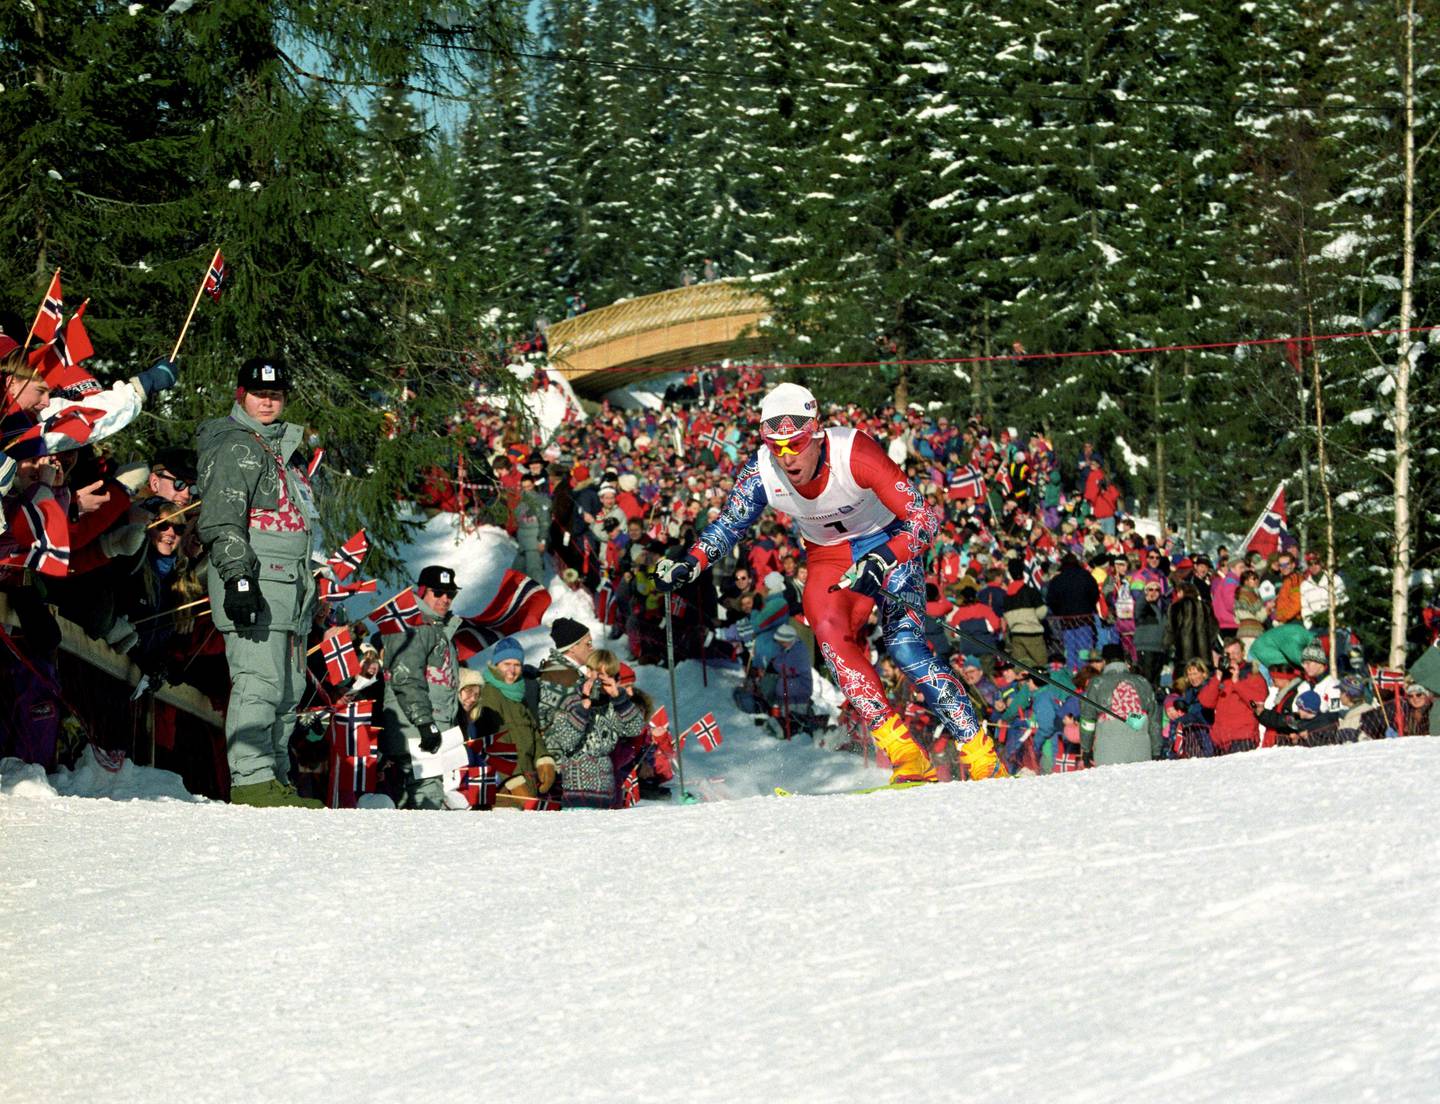 Lillehammer 19940219
Vinter-OL på Lillehammer
Langrenn, 15 km, jaktstart for menn.
Her, Bjørn Dæhlie i farta, han vant konkurransen.  Flere funskjonærer står langs løypa og passer på.
Foto: Jan Greve / NTB scanpix